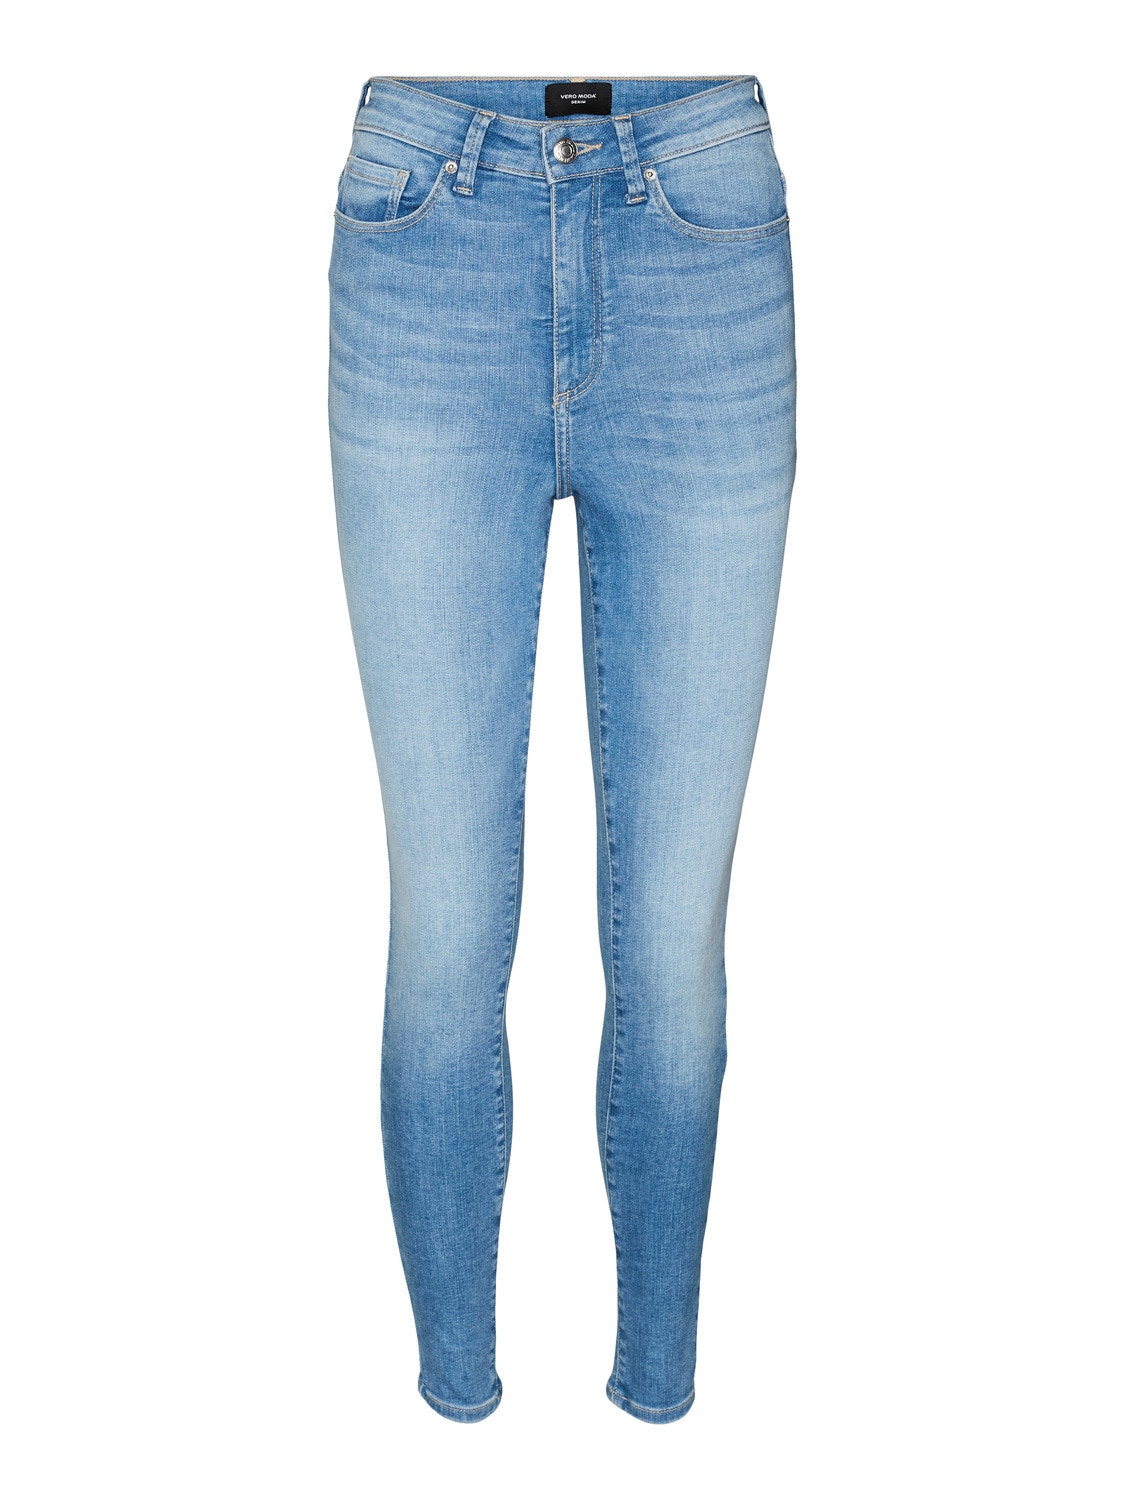 Vero Moda VMSOPHIA Skinny Fit Jeans -Medium Blue Denim - 10289737